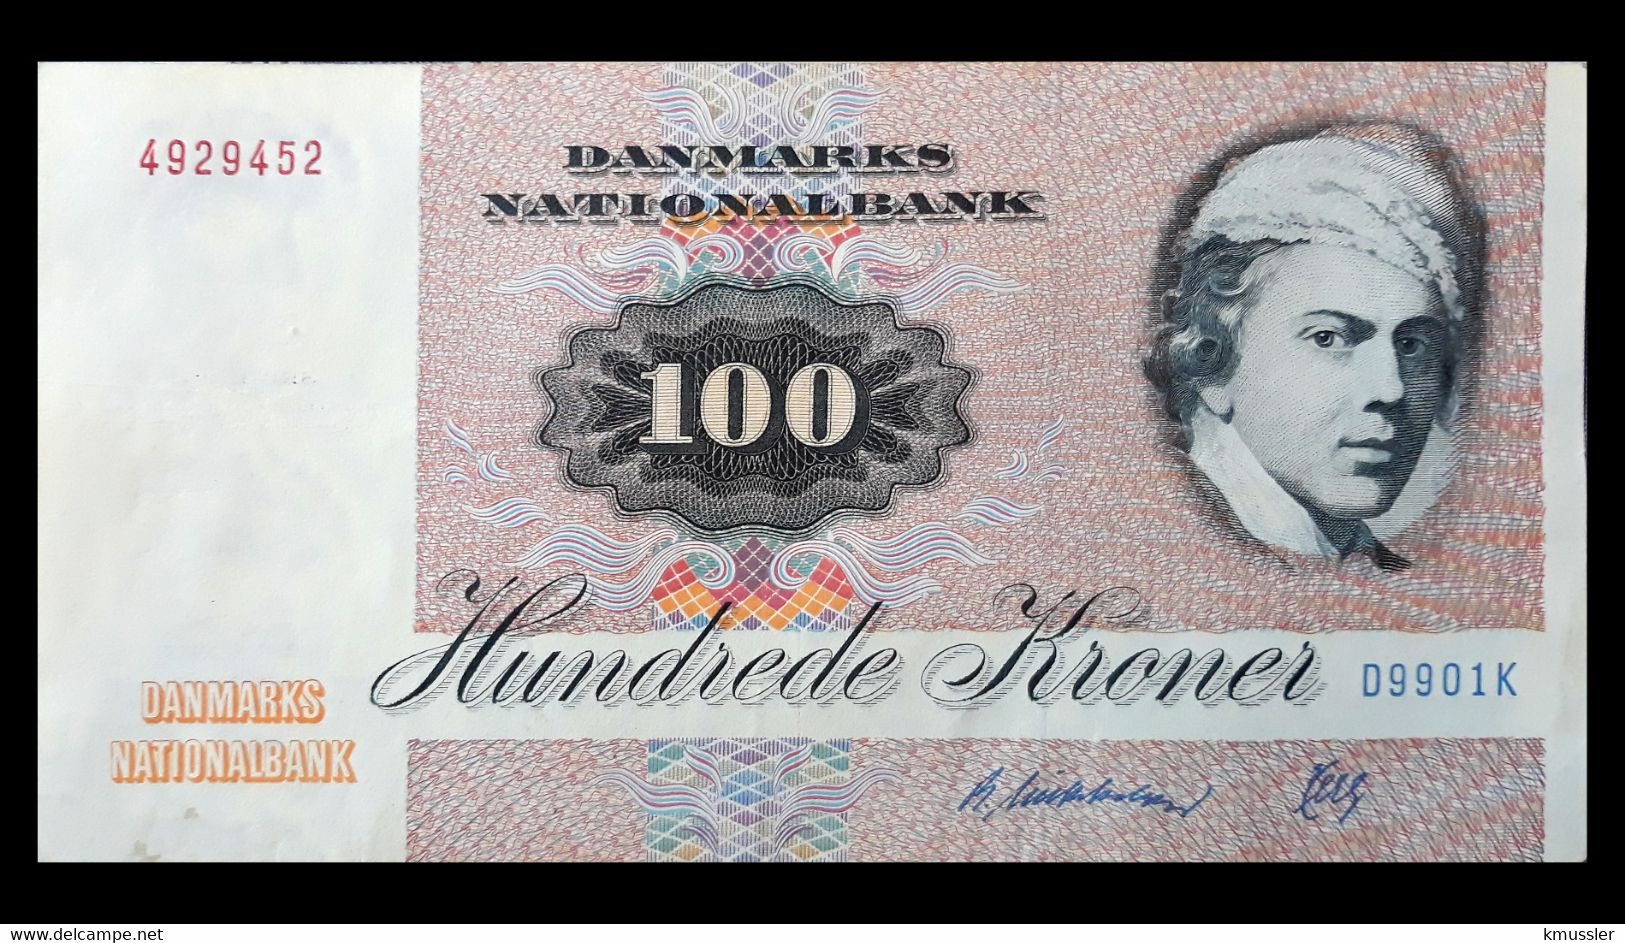 # # # Seltene Banknote Dänemark (Denmark) 100 Kroner, 1972 Prefix „D“ # # # - Denmark